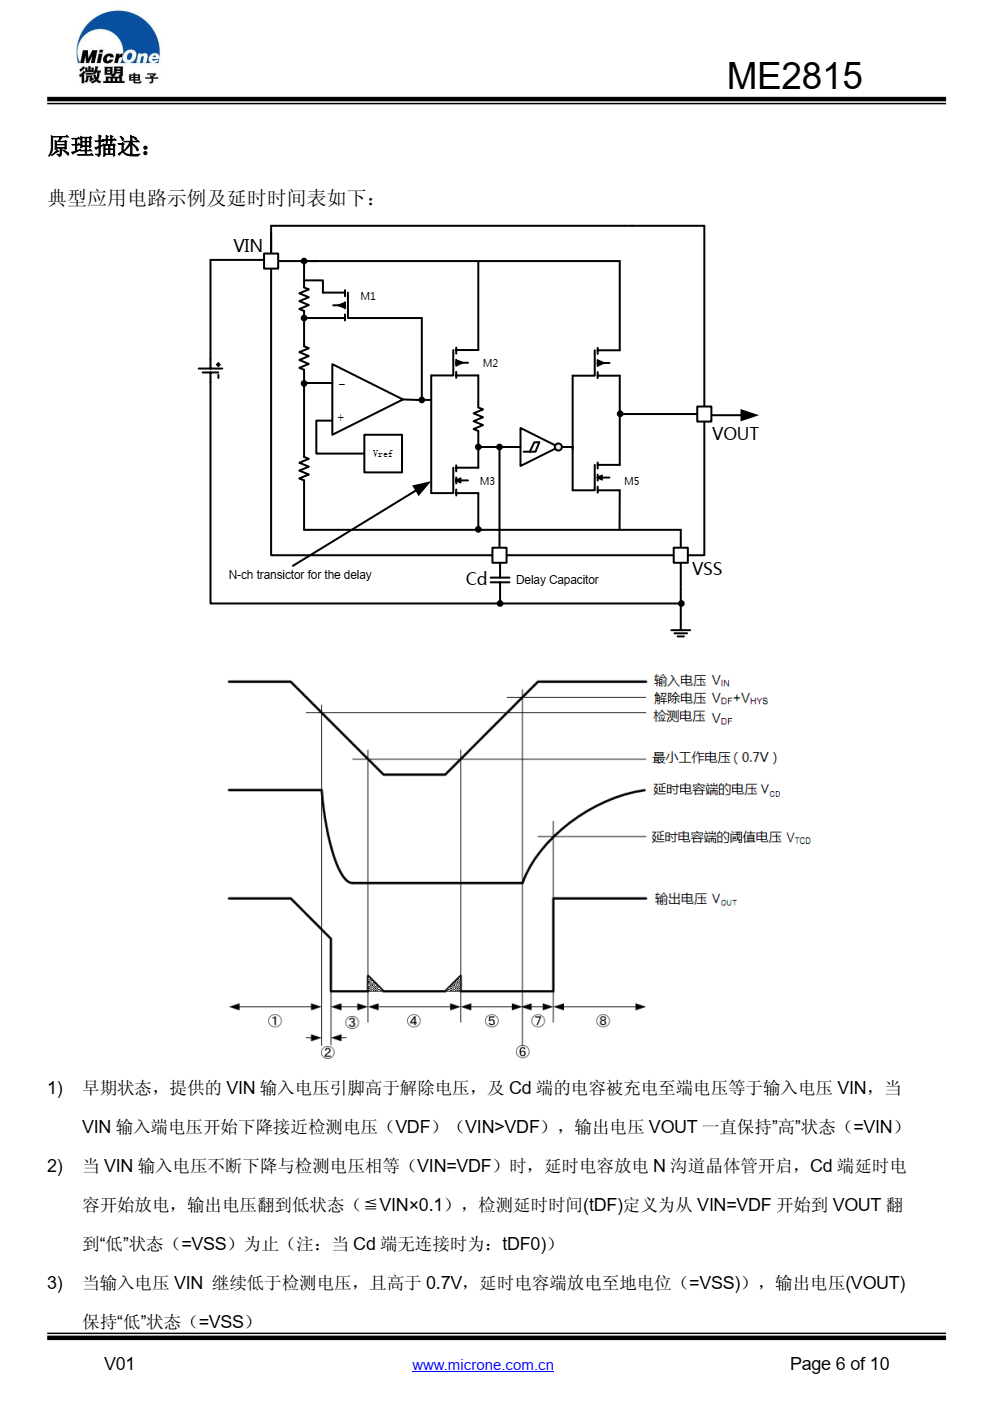 ME2815 是一系列高精度、低消耗电流电压检测器， 内置延时电路，可通过 Cd 端连接电容获得任意解除电压 延时时间。 ME2815 采用 CMOS 开漏输出